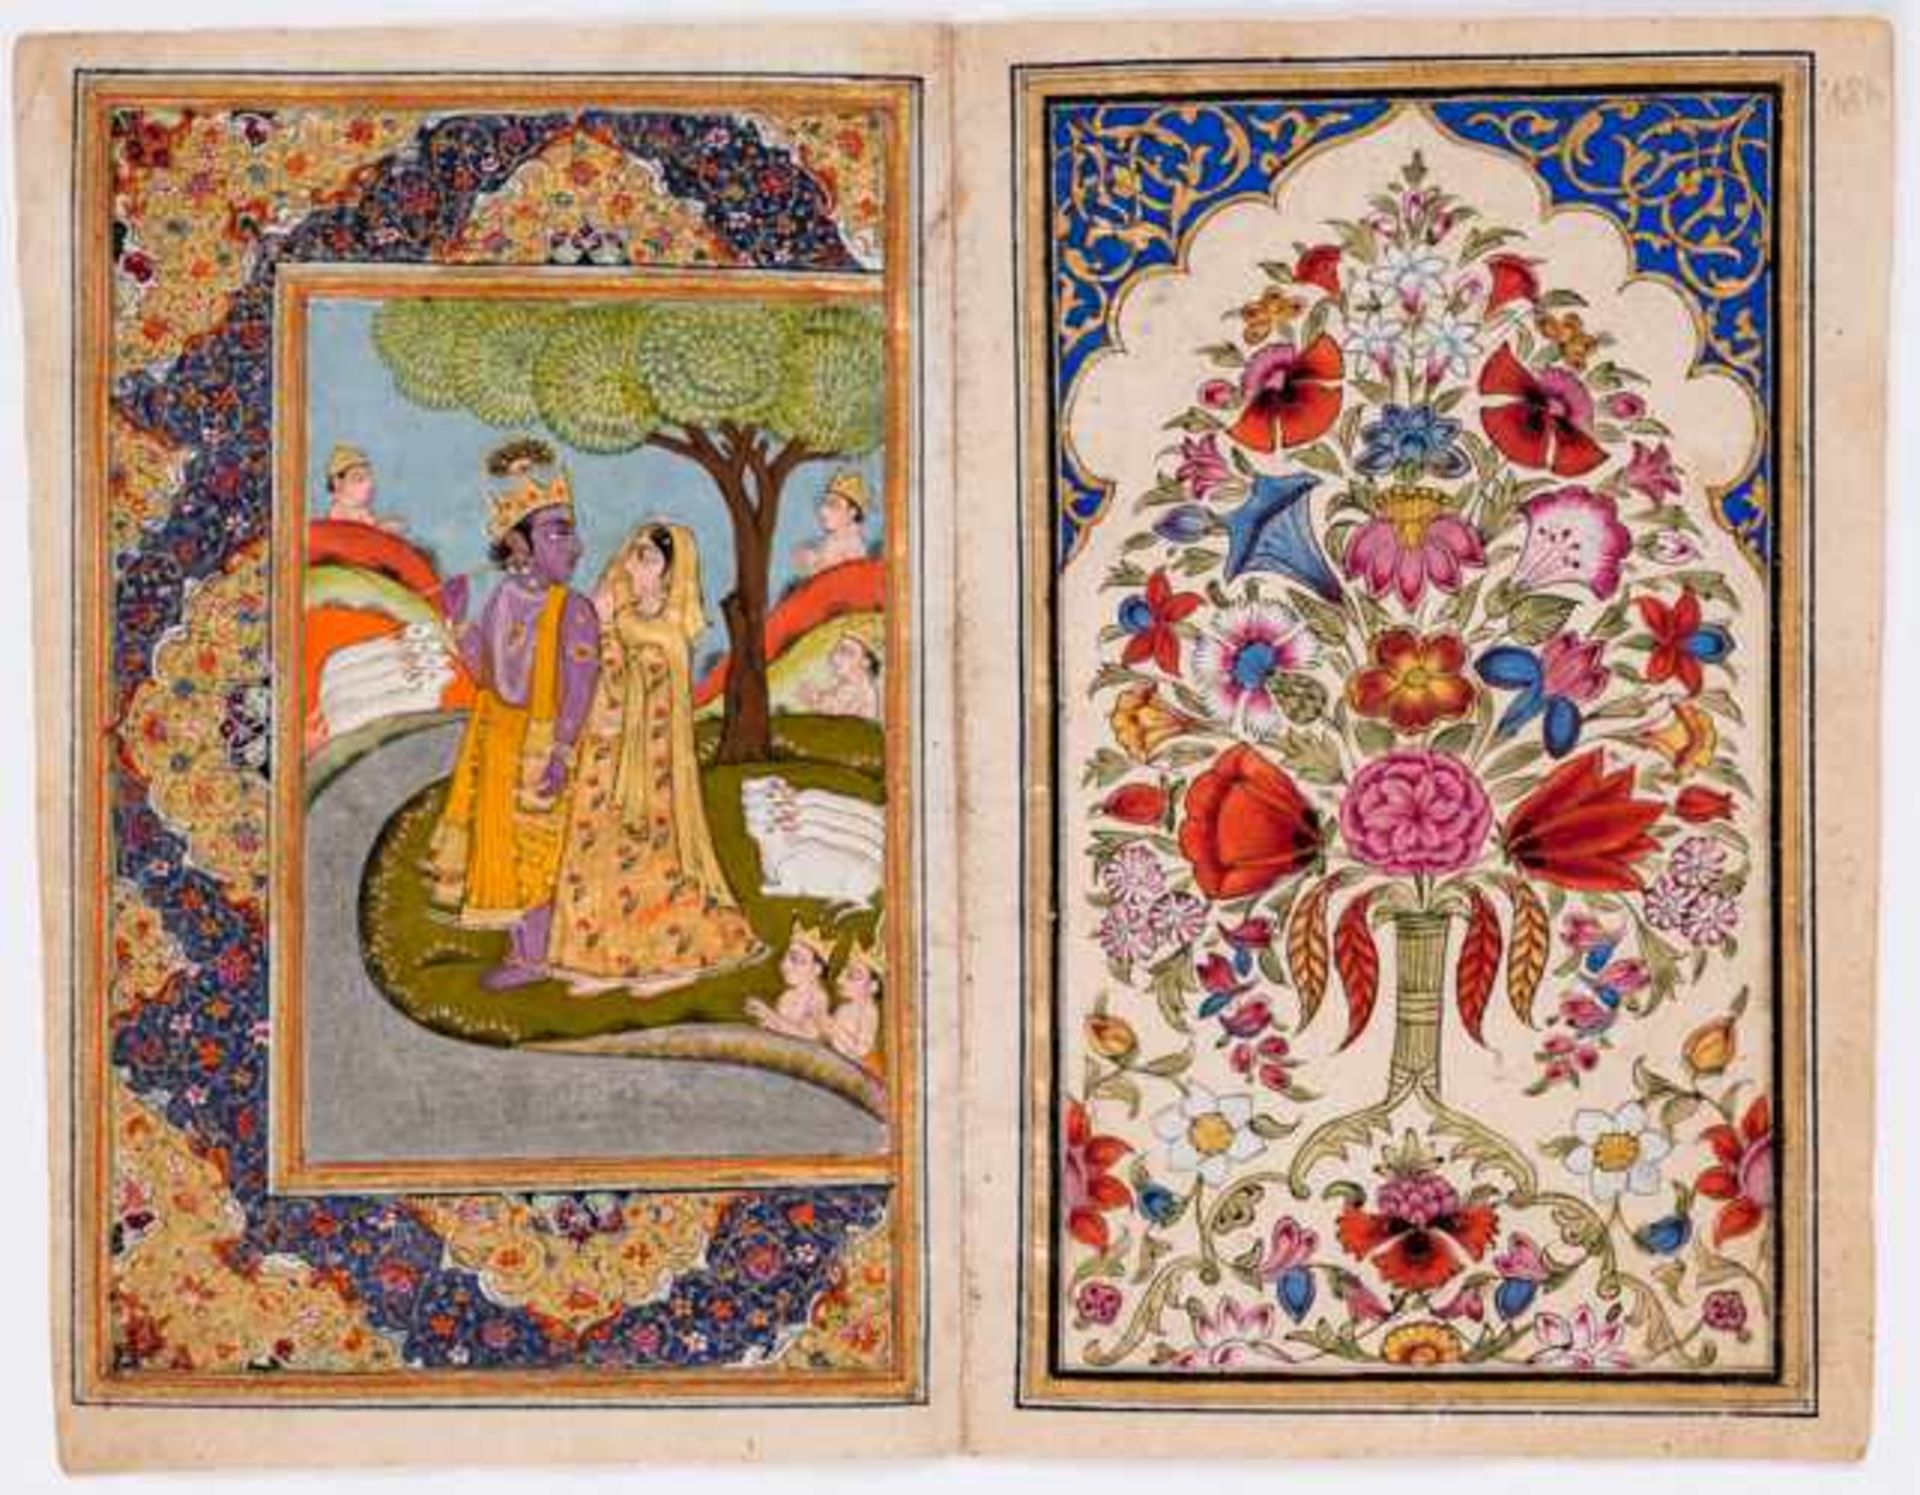 KRISHNA UND RADHA Miniatur-Malerei mit Farben und Gold auf Papier. Nordindien, Kashmir, um Mitte 19.